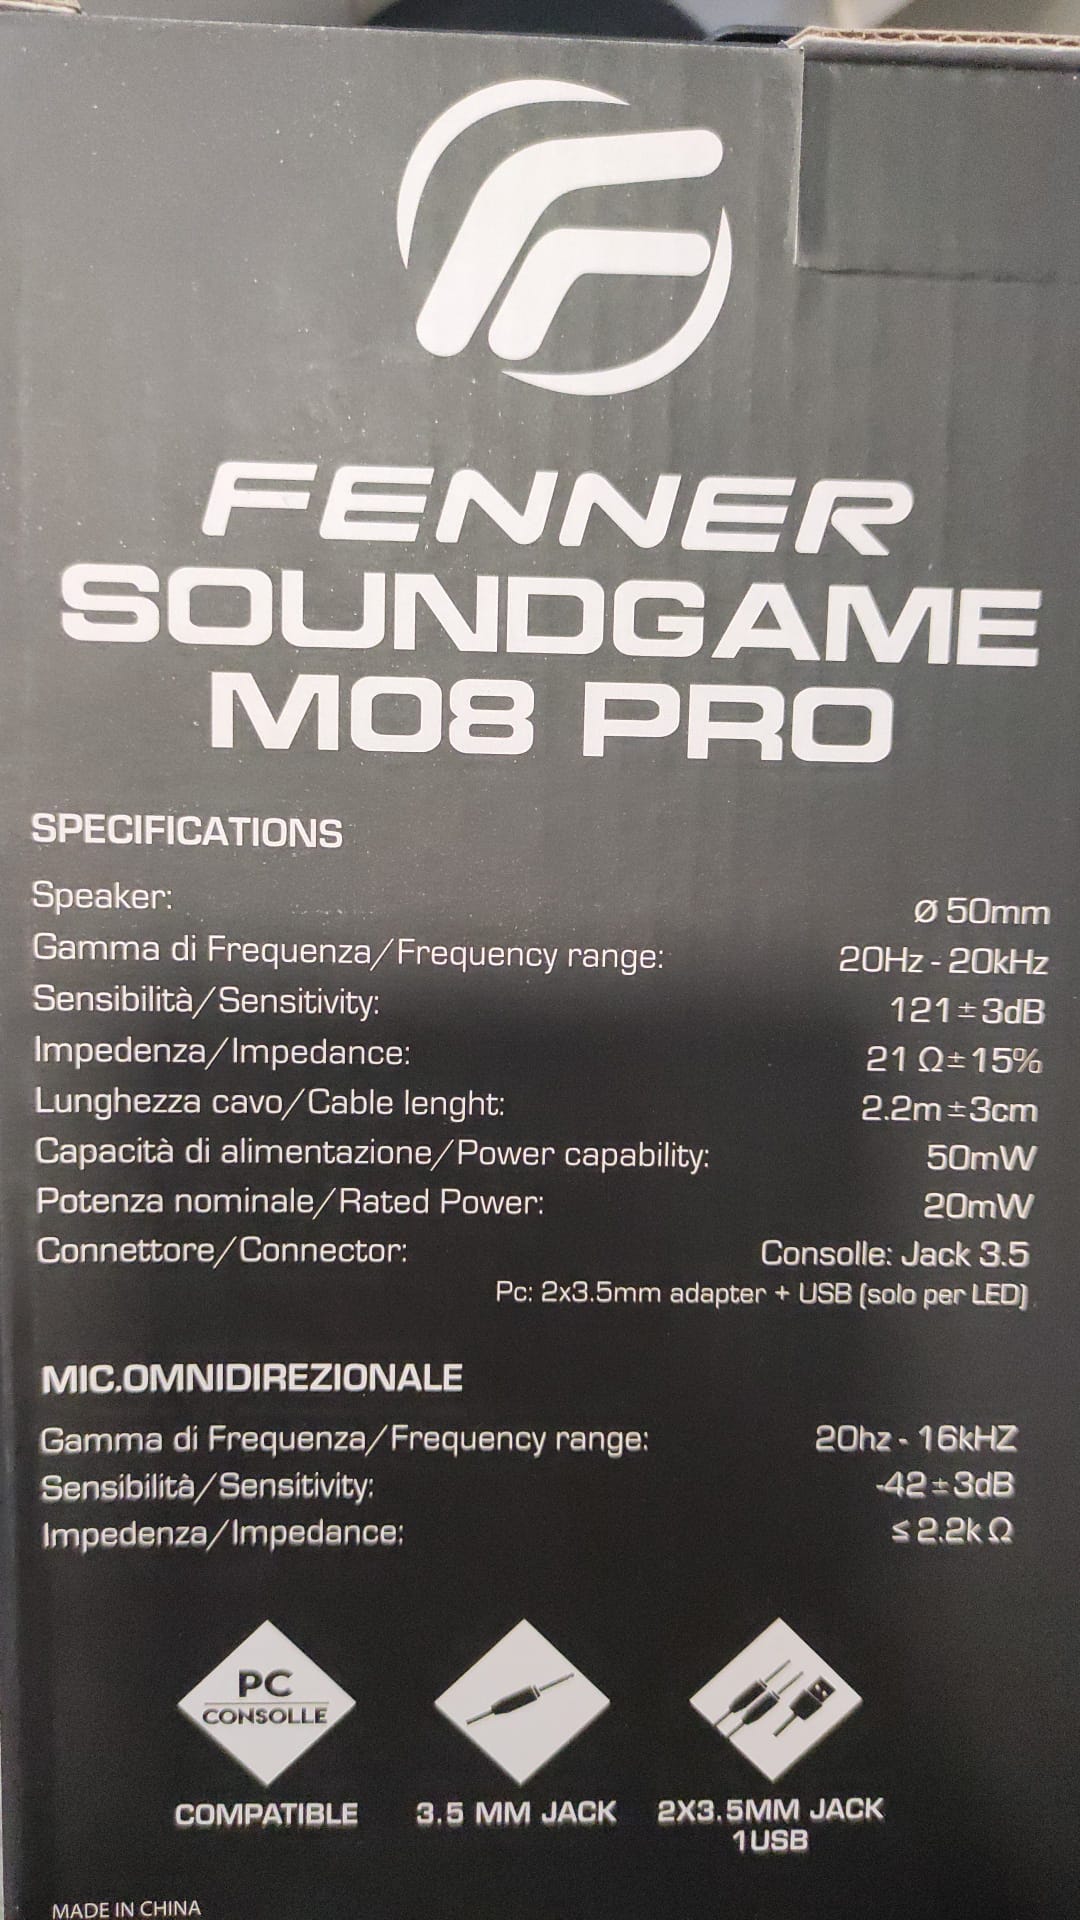 Cuffie gaming con microfono per console e pc Fenner Soundgame m08 pro